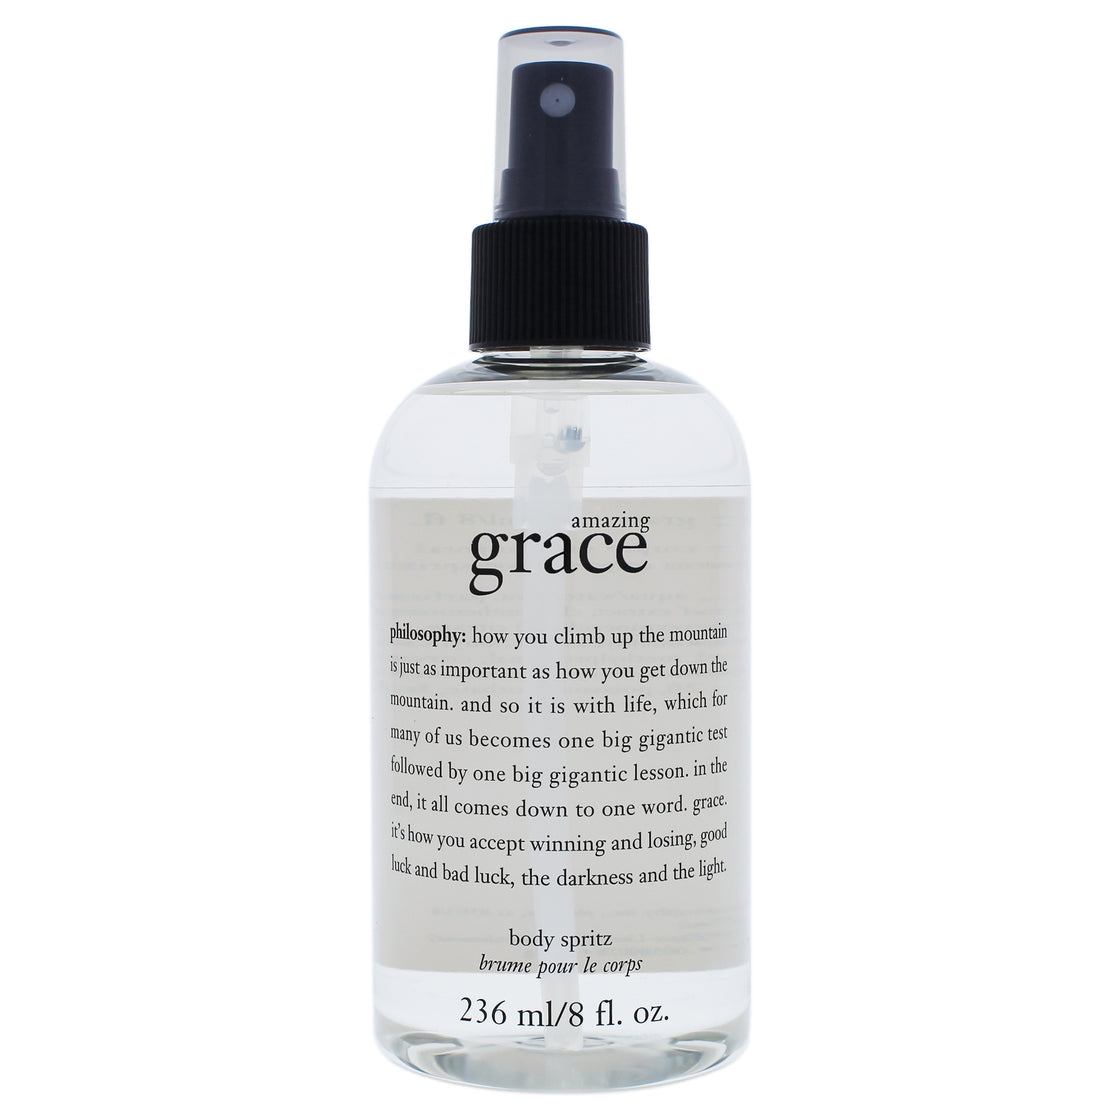 Amazing Grace Body Spritz by Philosophy for Women - 8 oz Body Spray